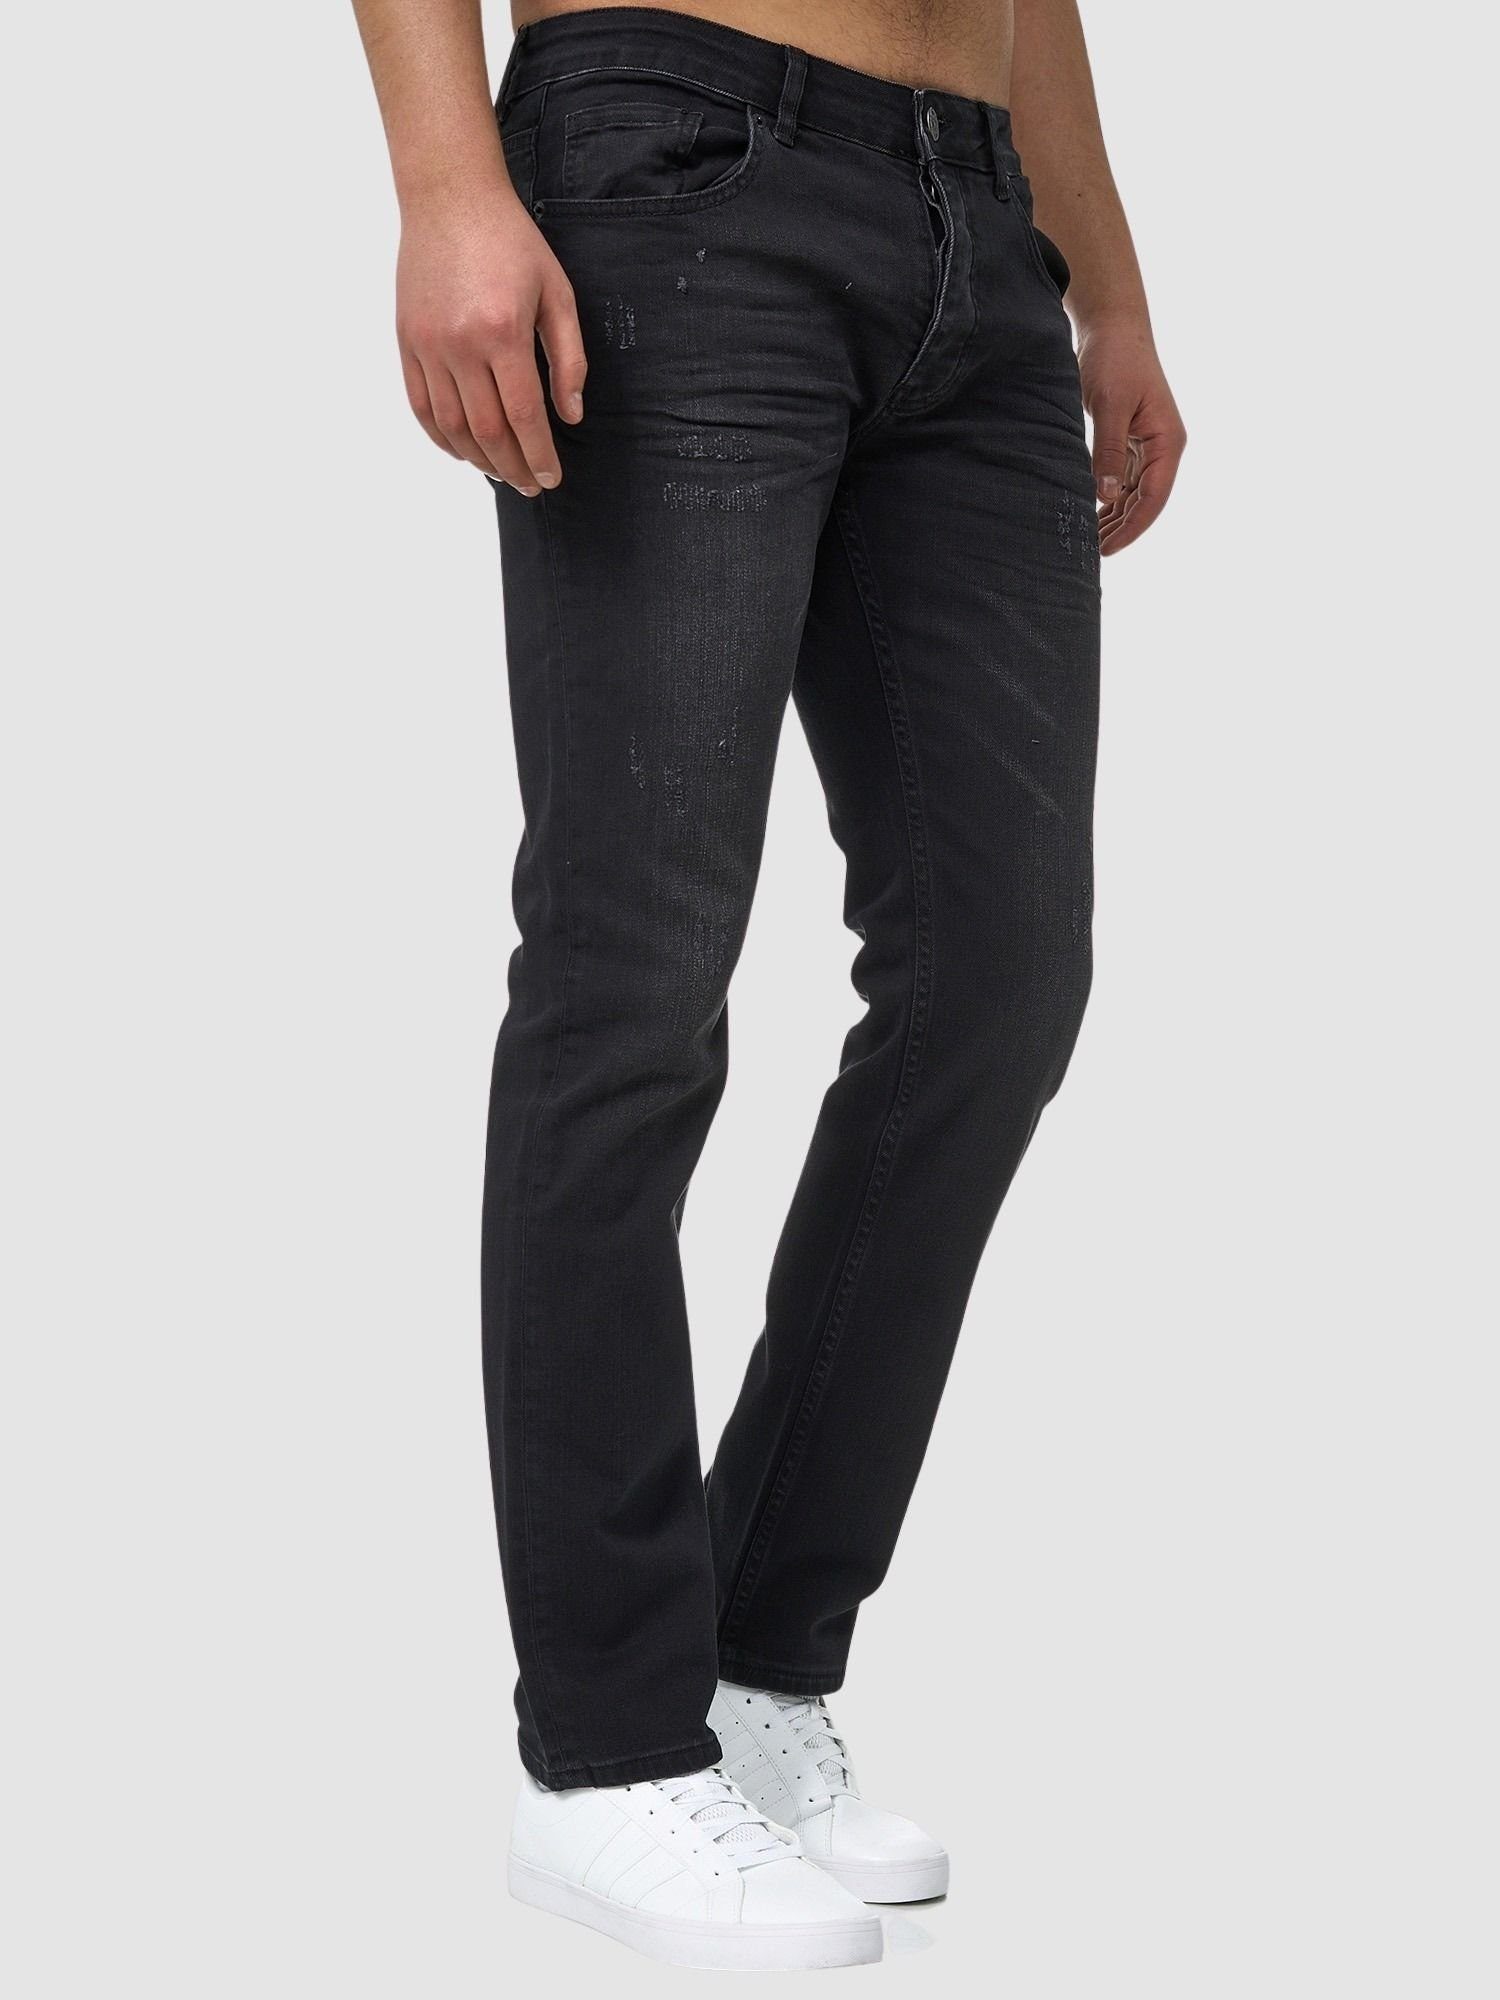 John Kayna Basic Business Skinny 603 Slim-fit-Jeans Used Slim Freizeit Männer Herren Designerj Casual Fit (Jeanshose Designerjeans Bootcut, Stretch Denim 1-tlg) Jeans Hose Black Midnight